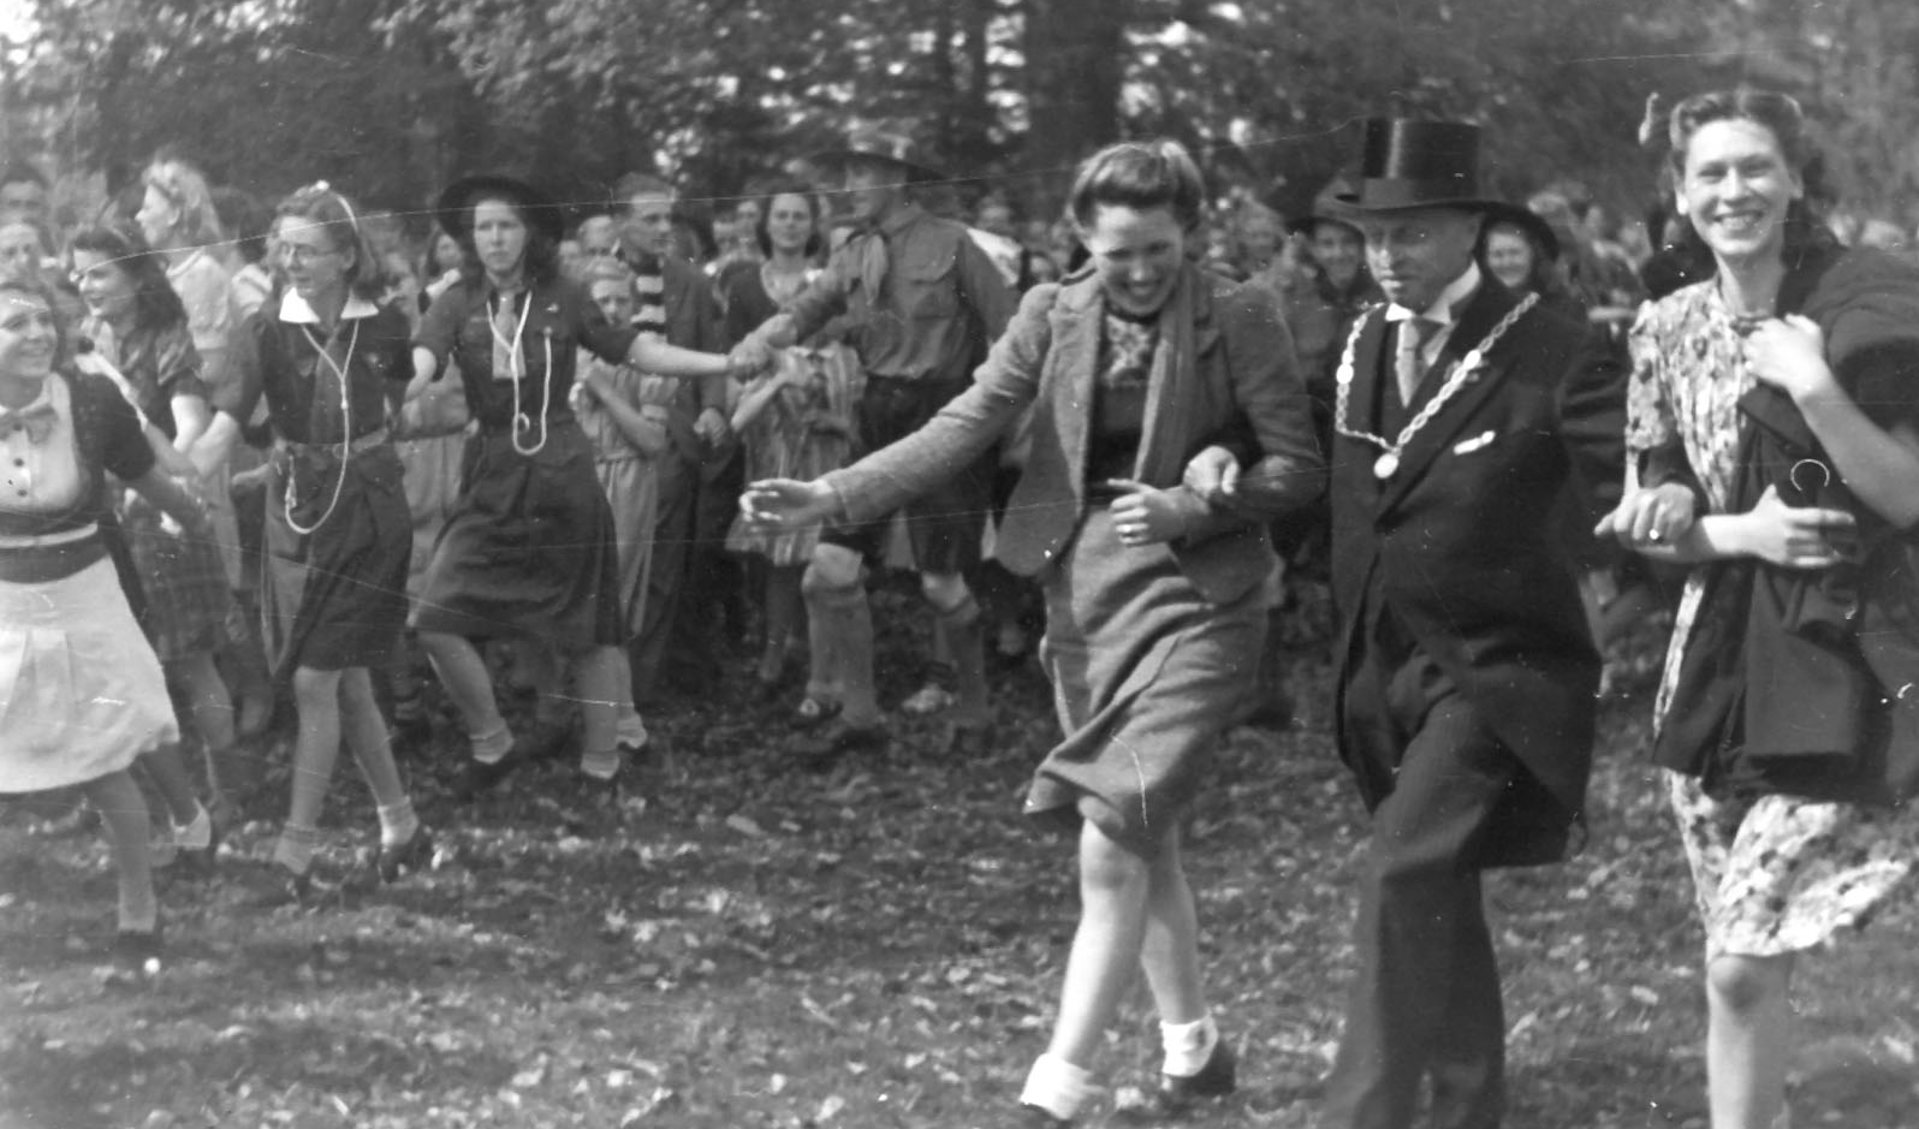 Op 8 mei 1945 was er feest voor Jagtlust. Burgemeester Van den Borch maakt een vreugdedansje met twee Biltse schonen. (foto uit boek Bernard Schut)